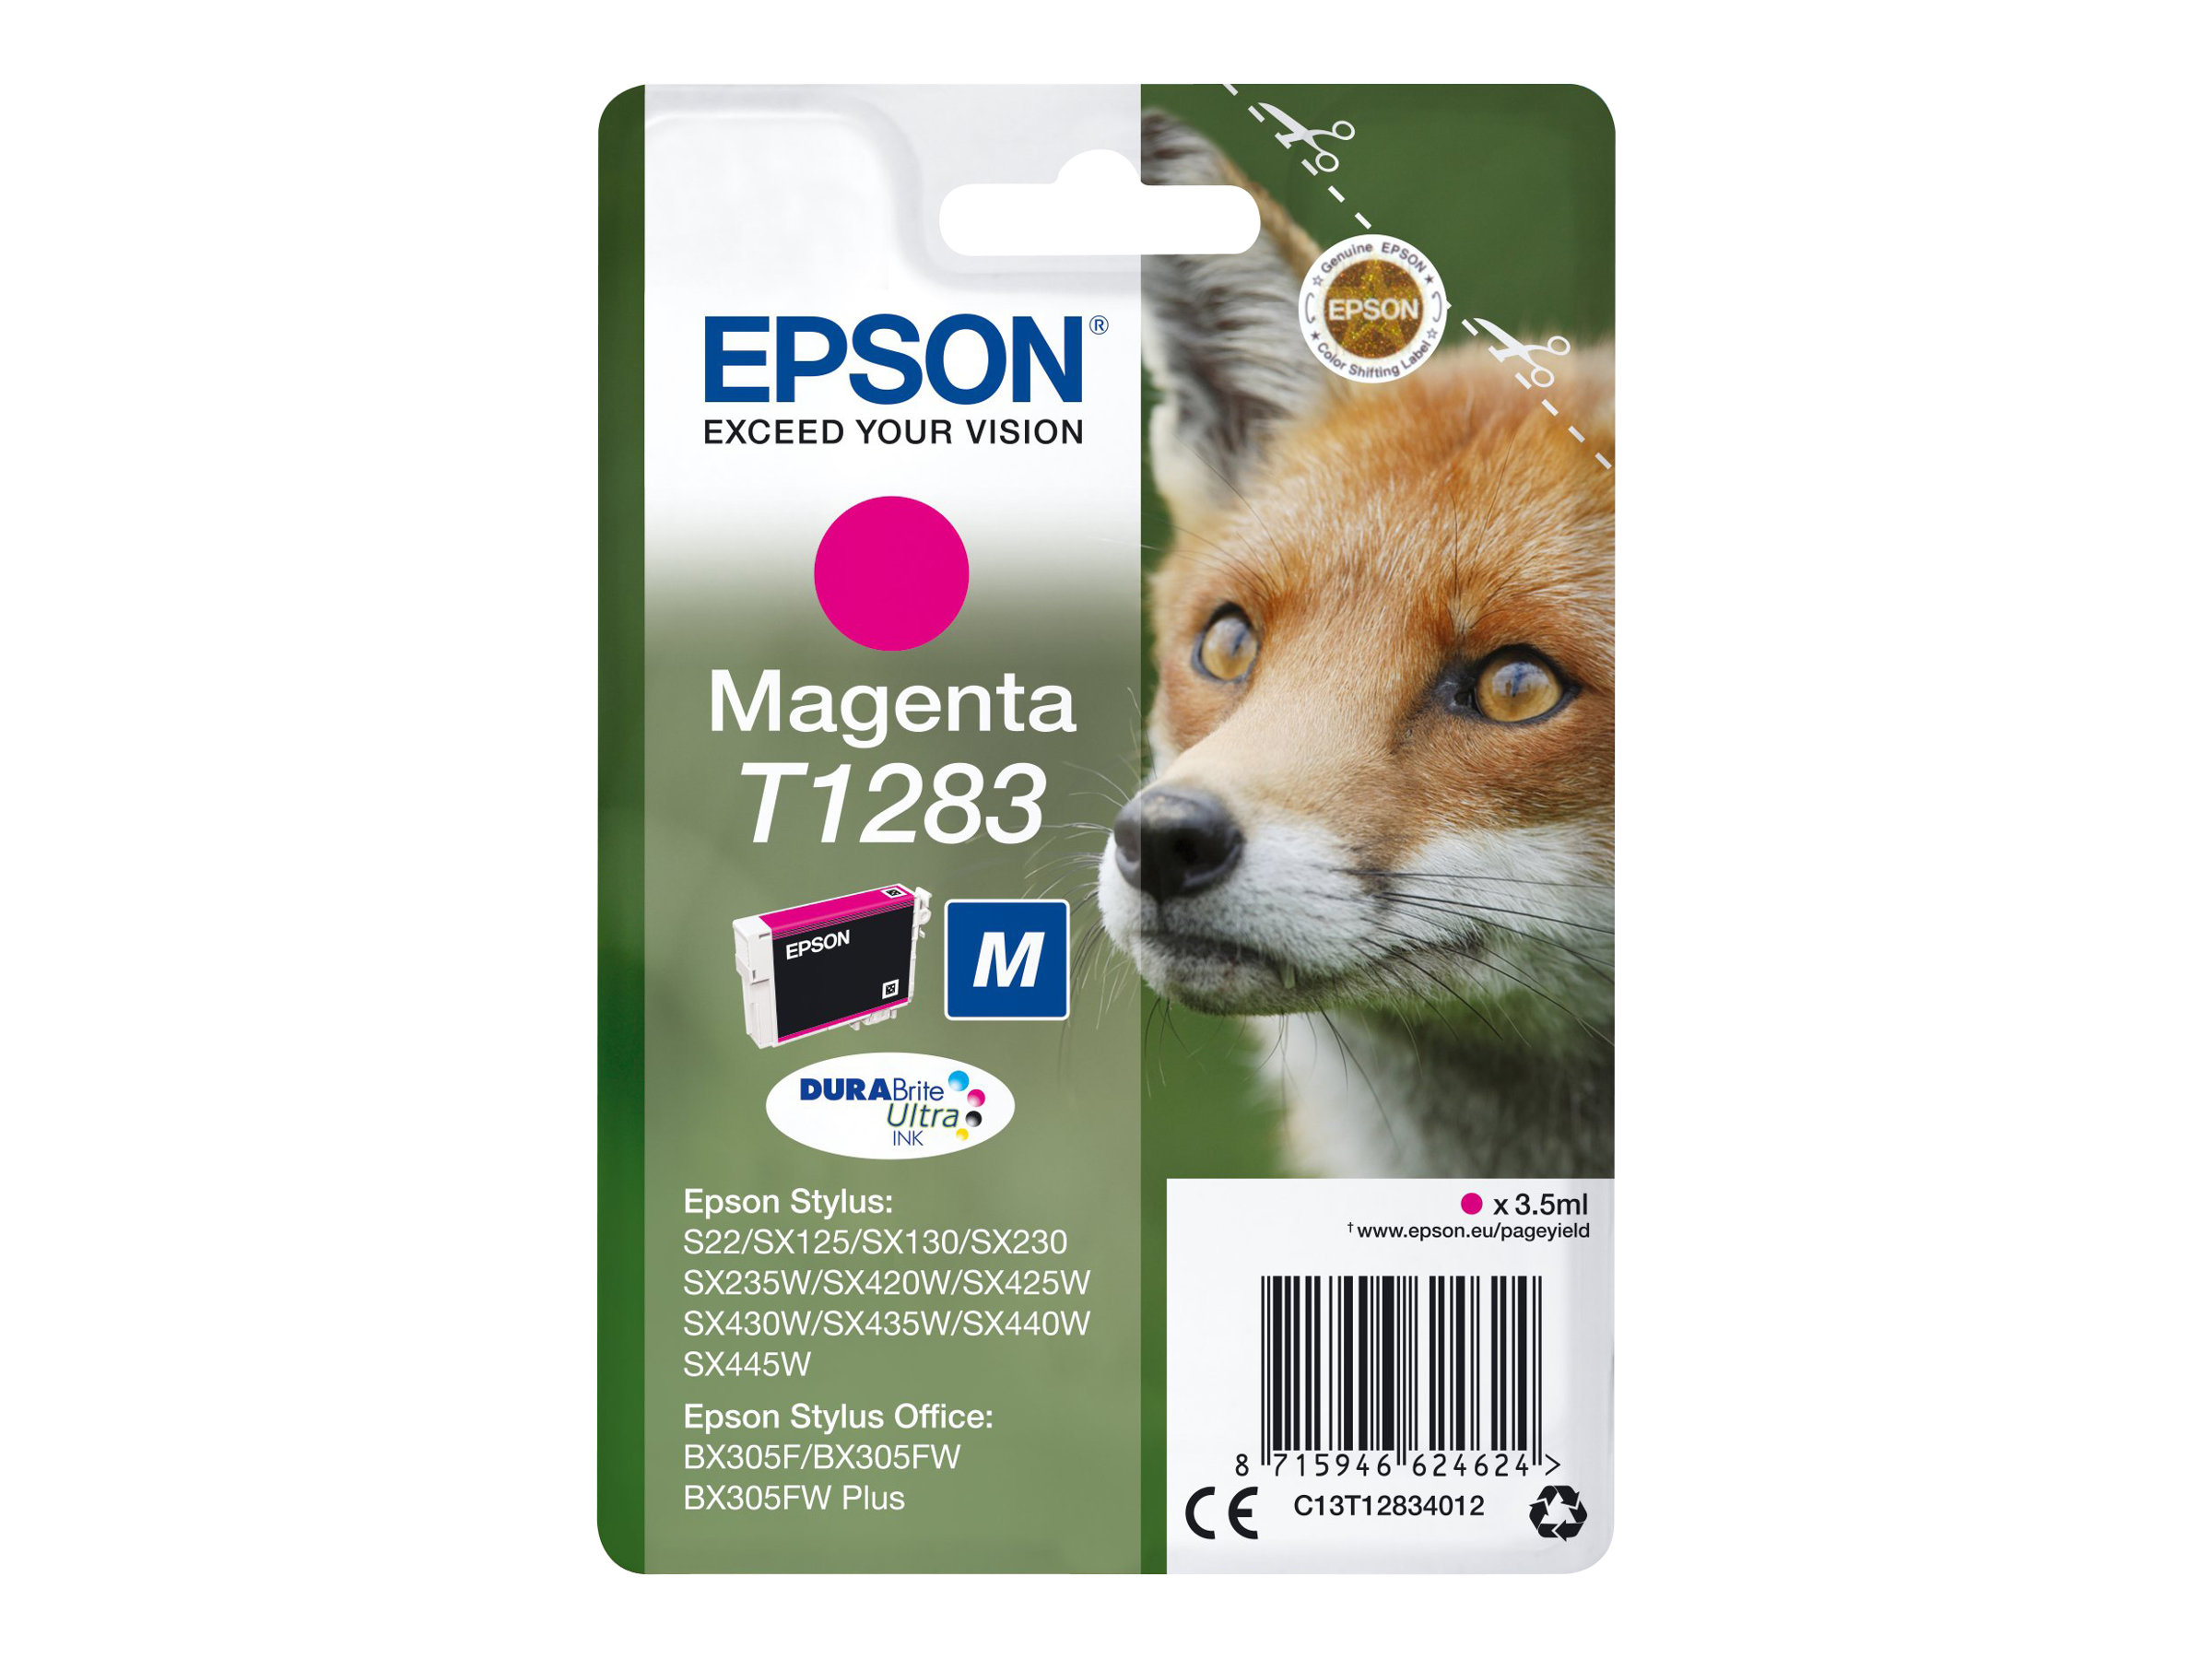 Epson T1283 - 3.5 ml - taille M - magenta - original - blister - cartouche d'encre - pour Stylus S22, SX130, SX230, SX235, SX430, SX435, SX438, SX440, SX445; Stylus Office BX305 - C13T12834012 - Cartouches d'imprimante